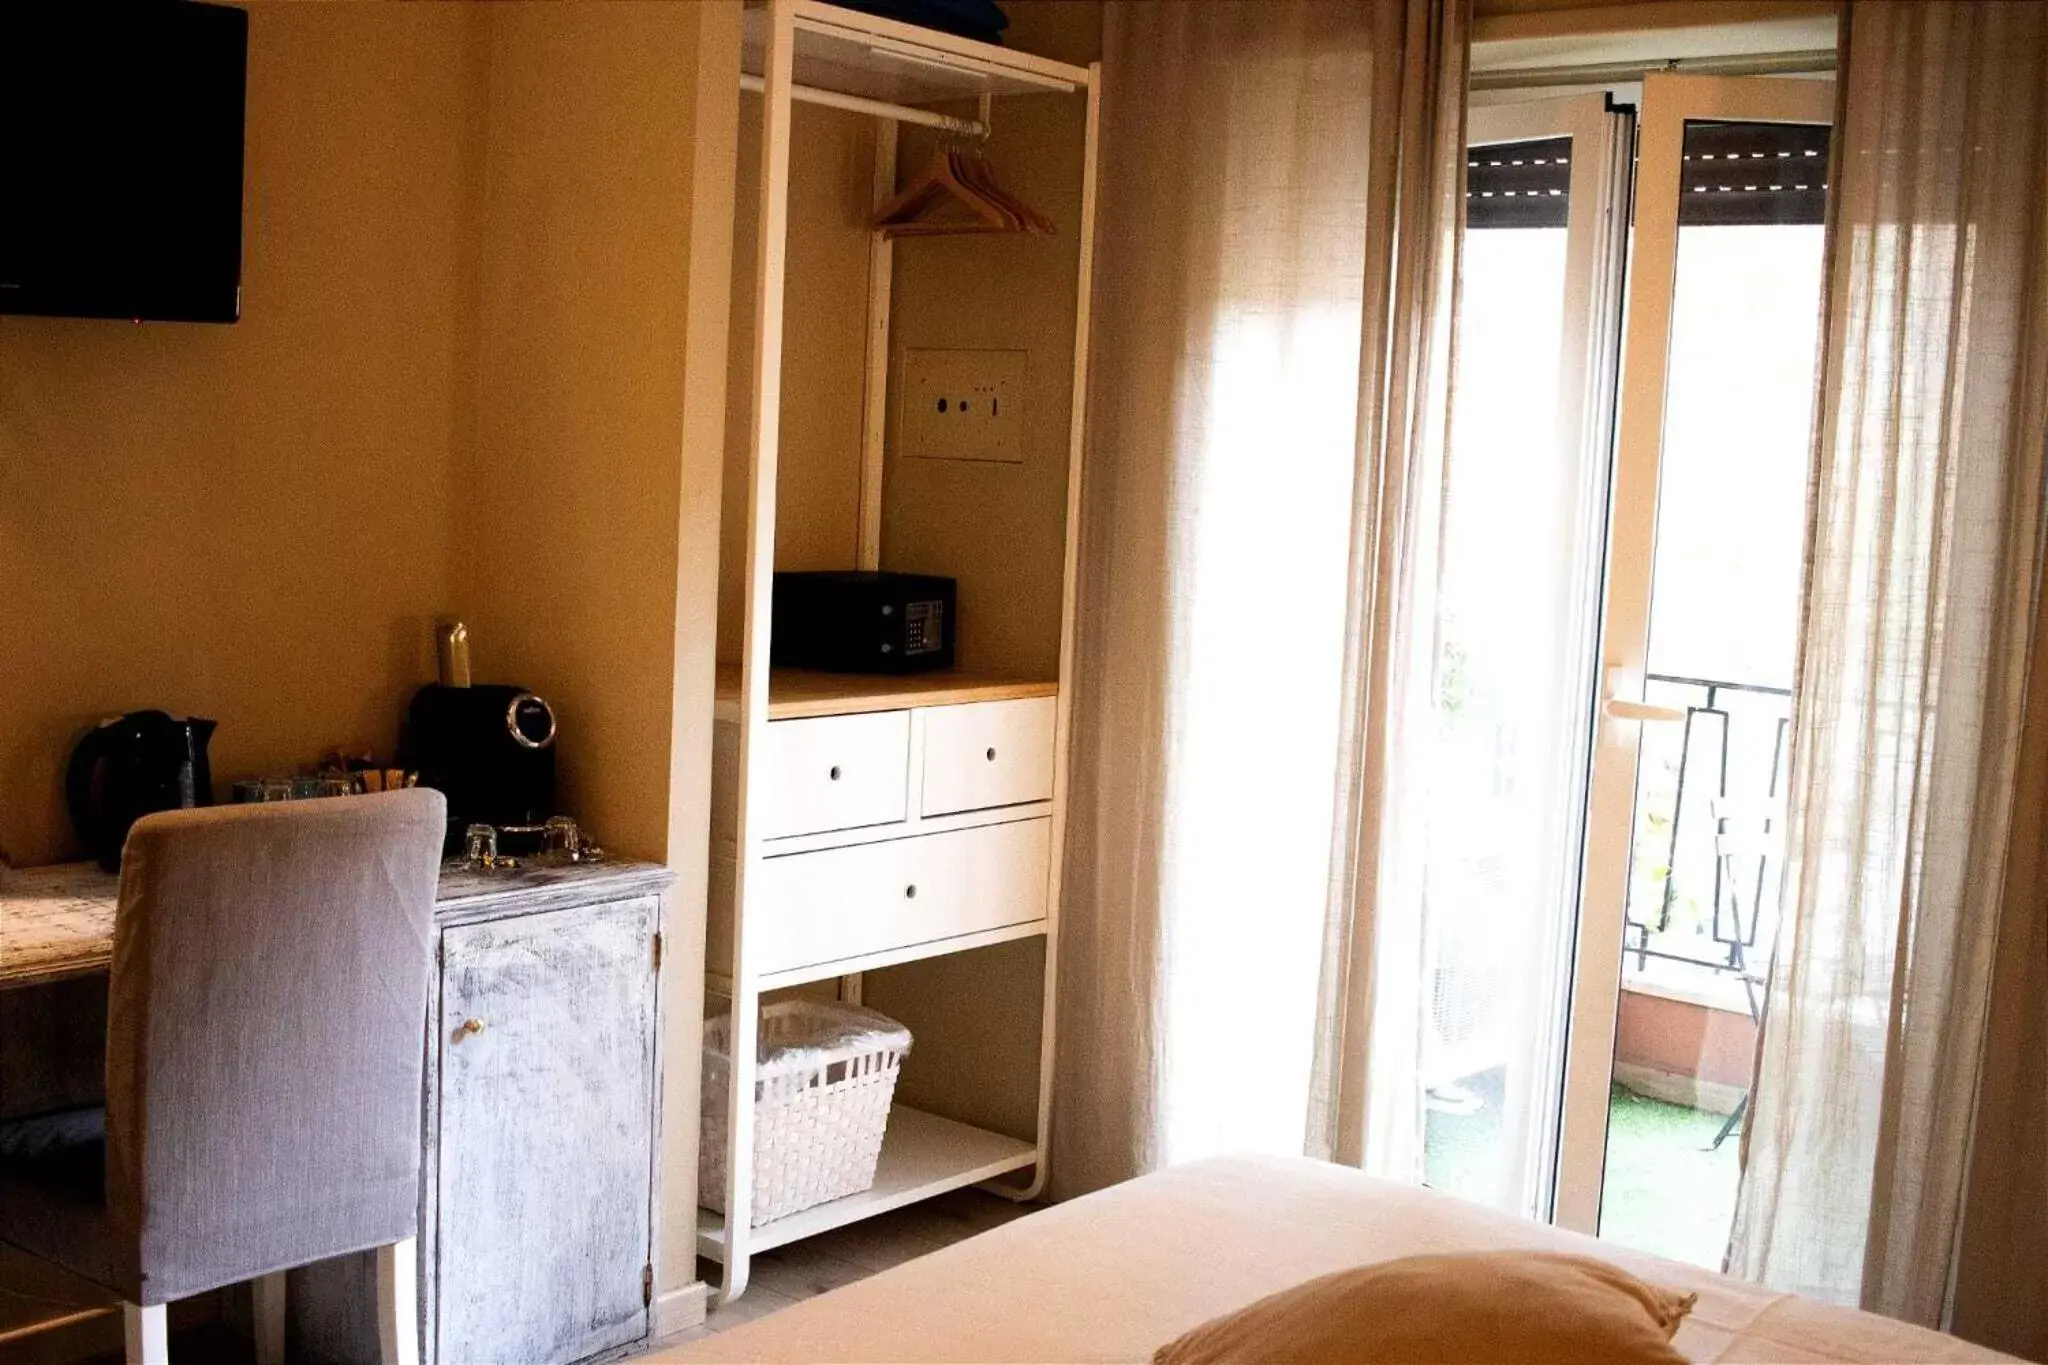 Bedroom, Bathroom in In Trastevere House